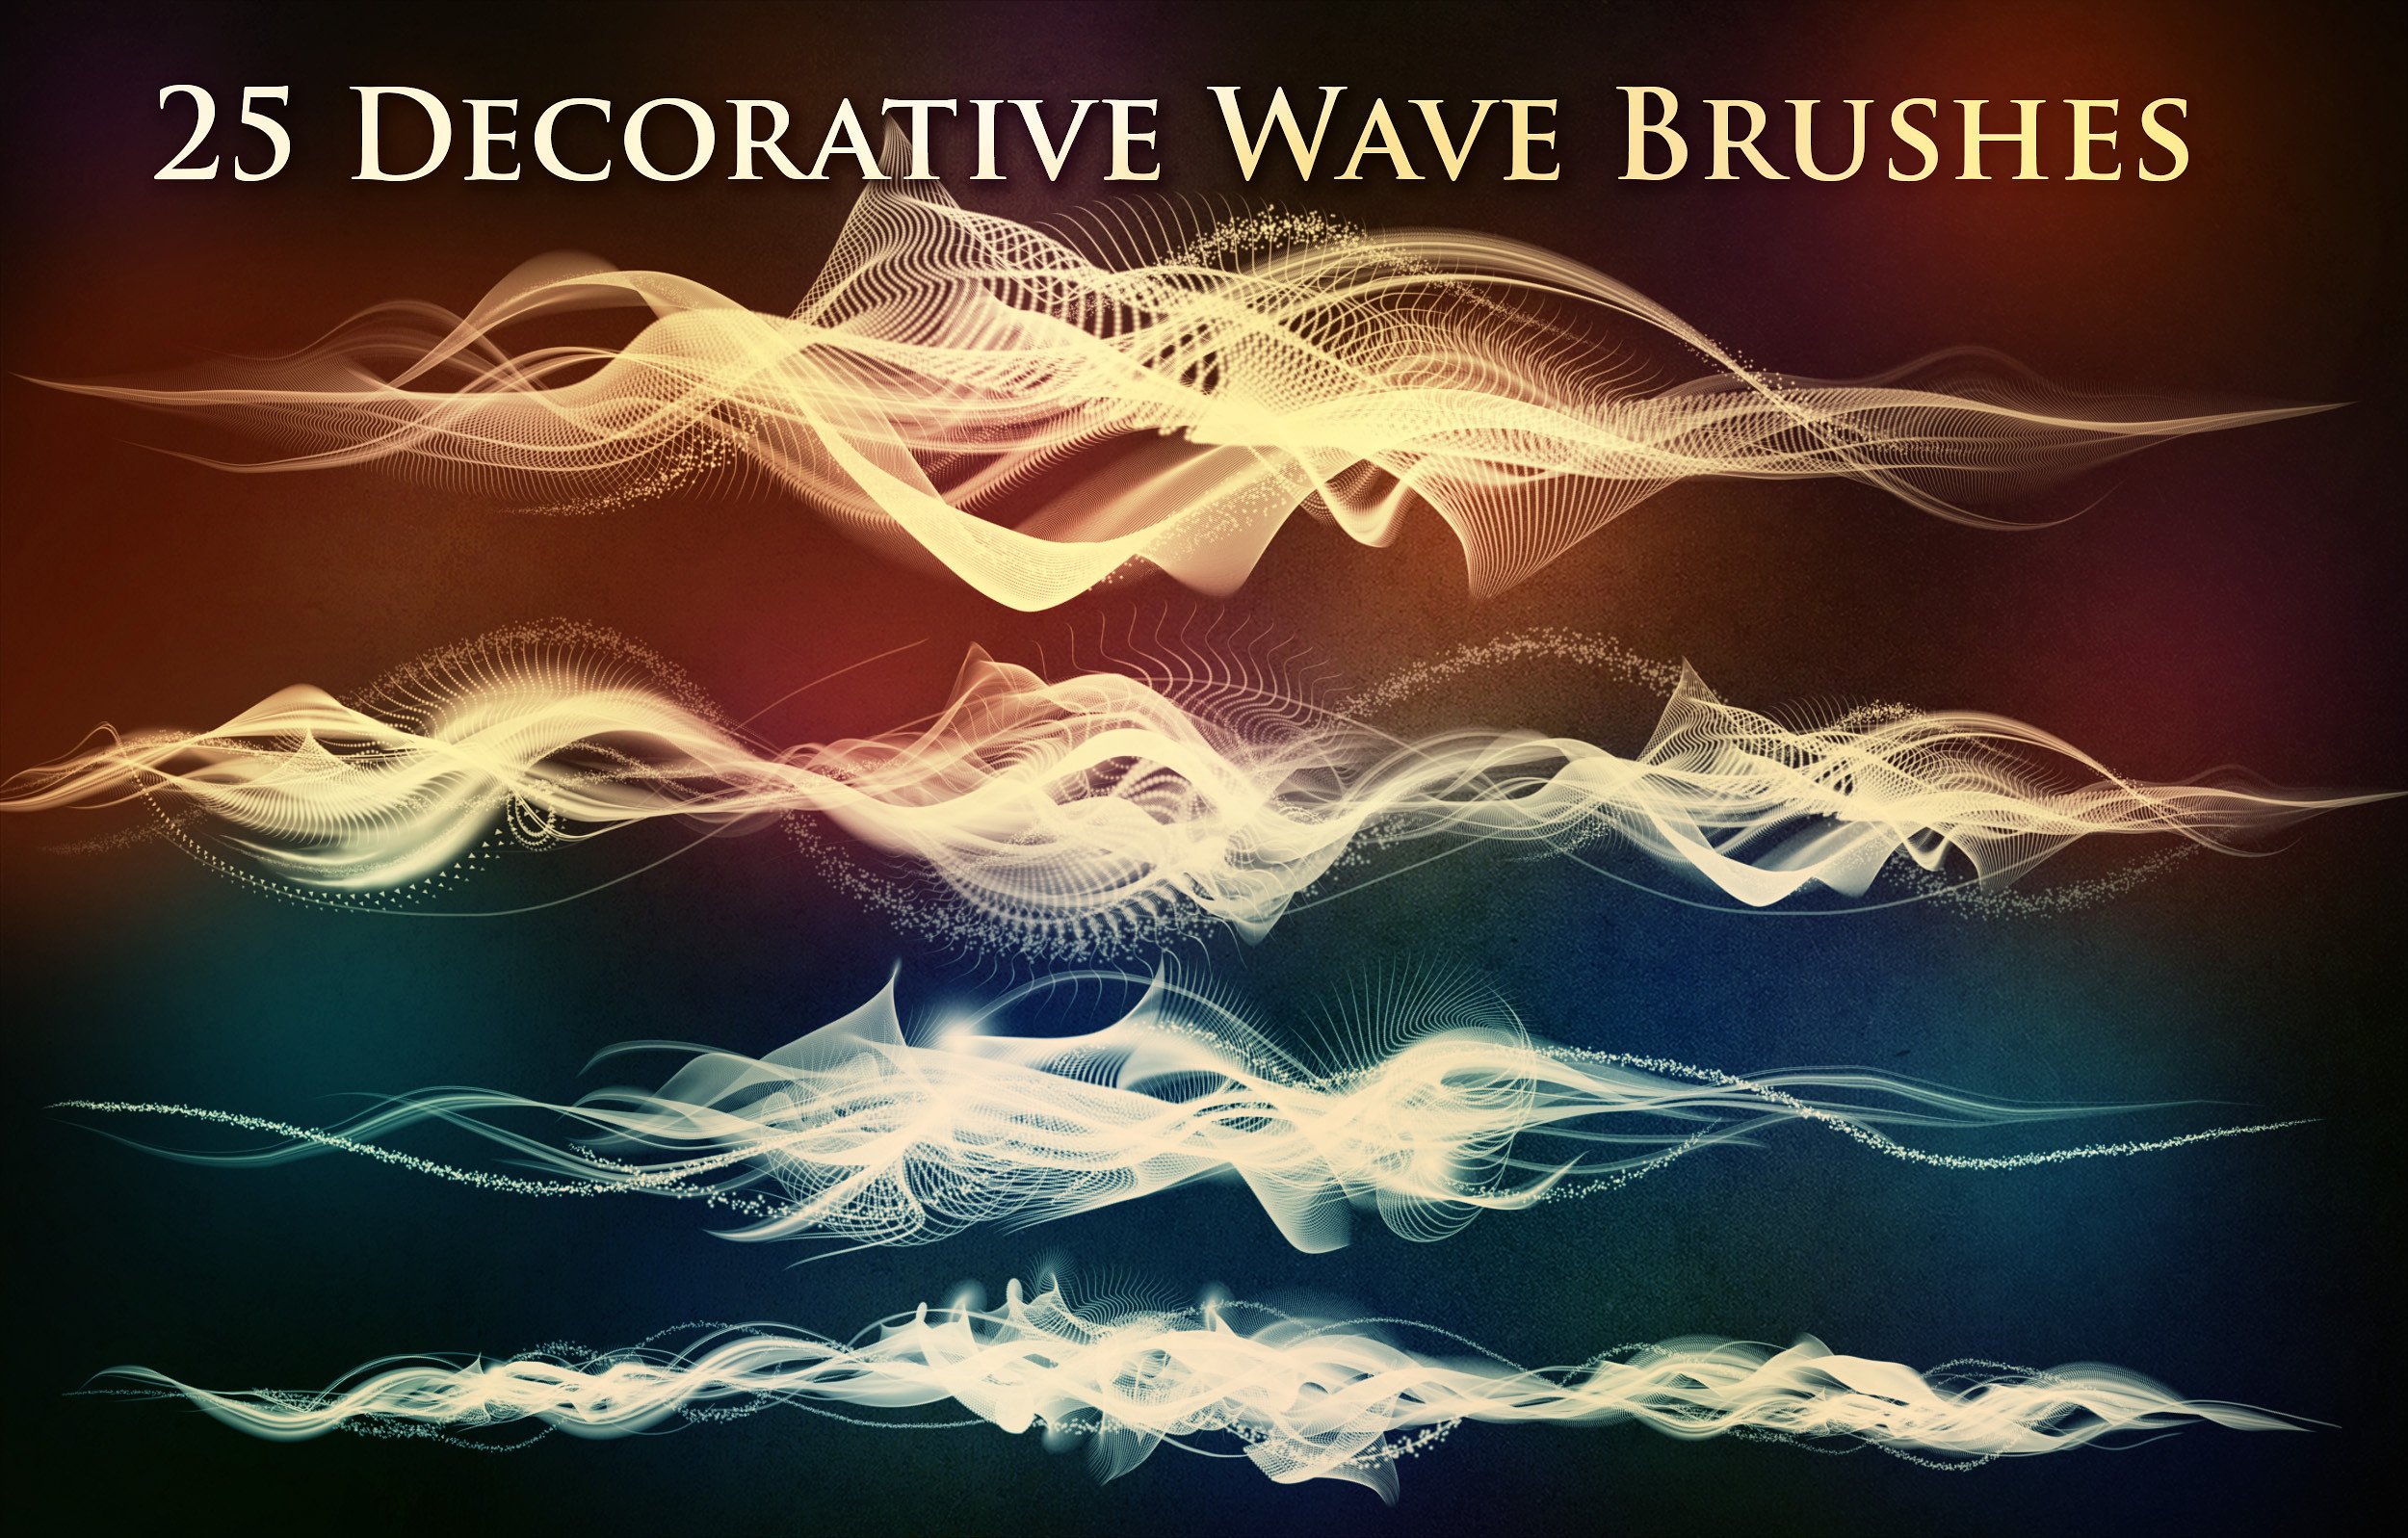 25 decorative wave brushes.